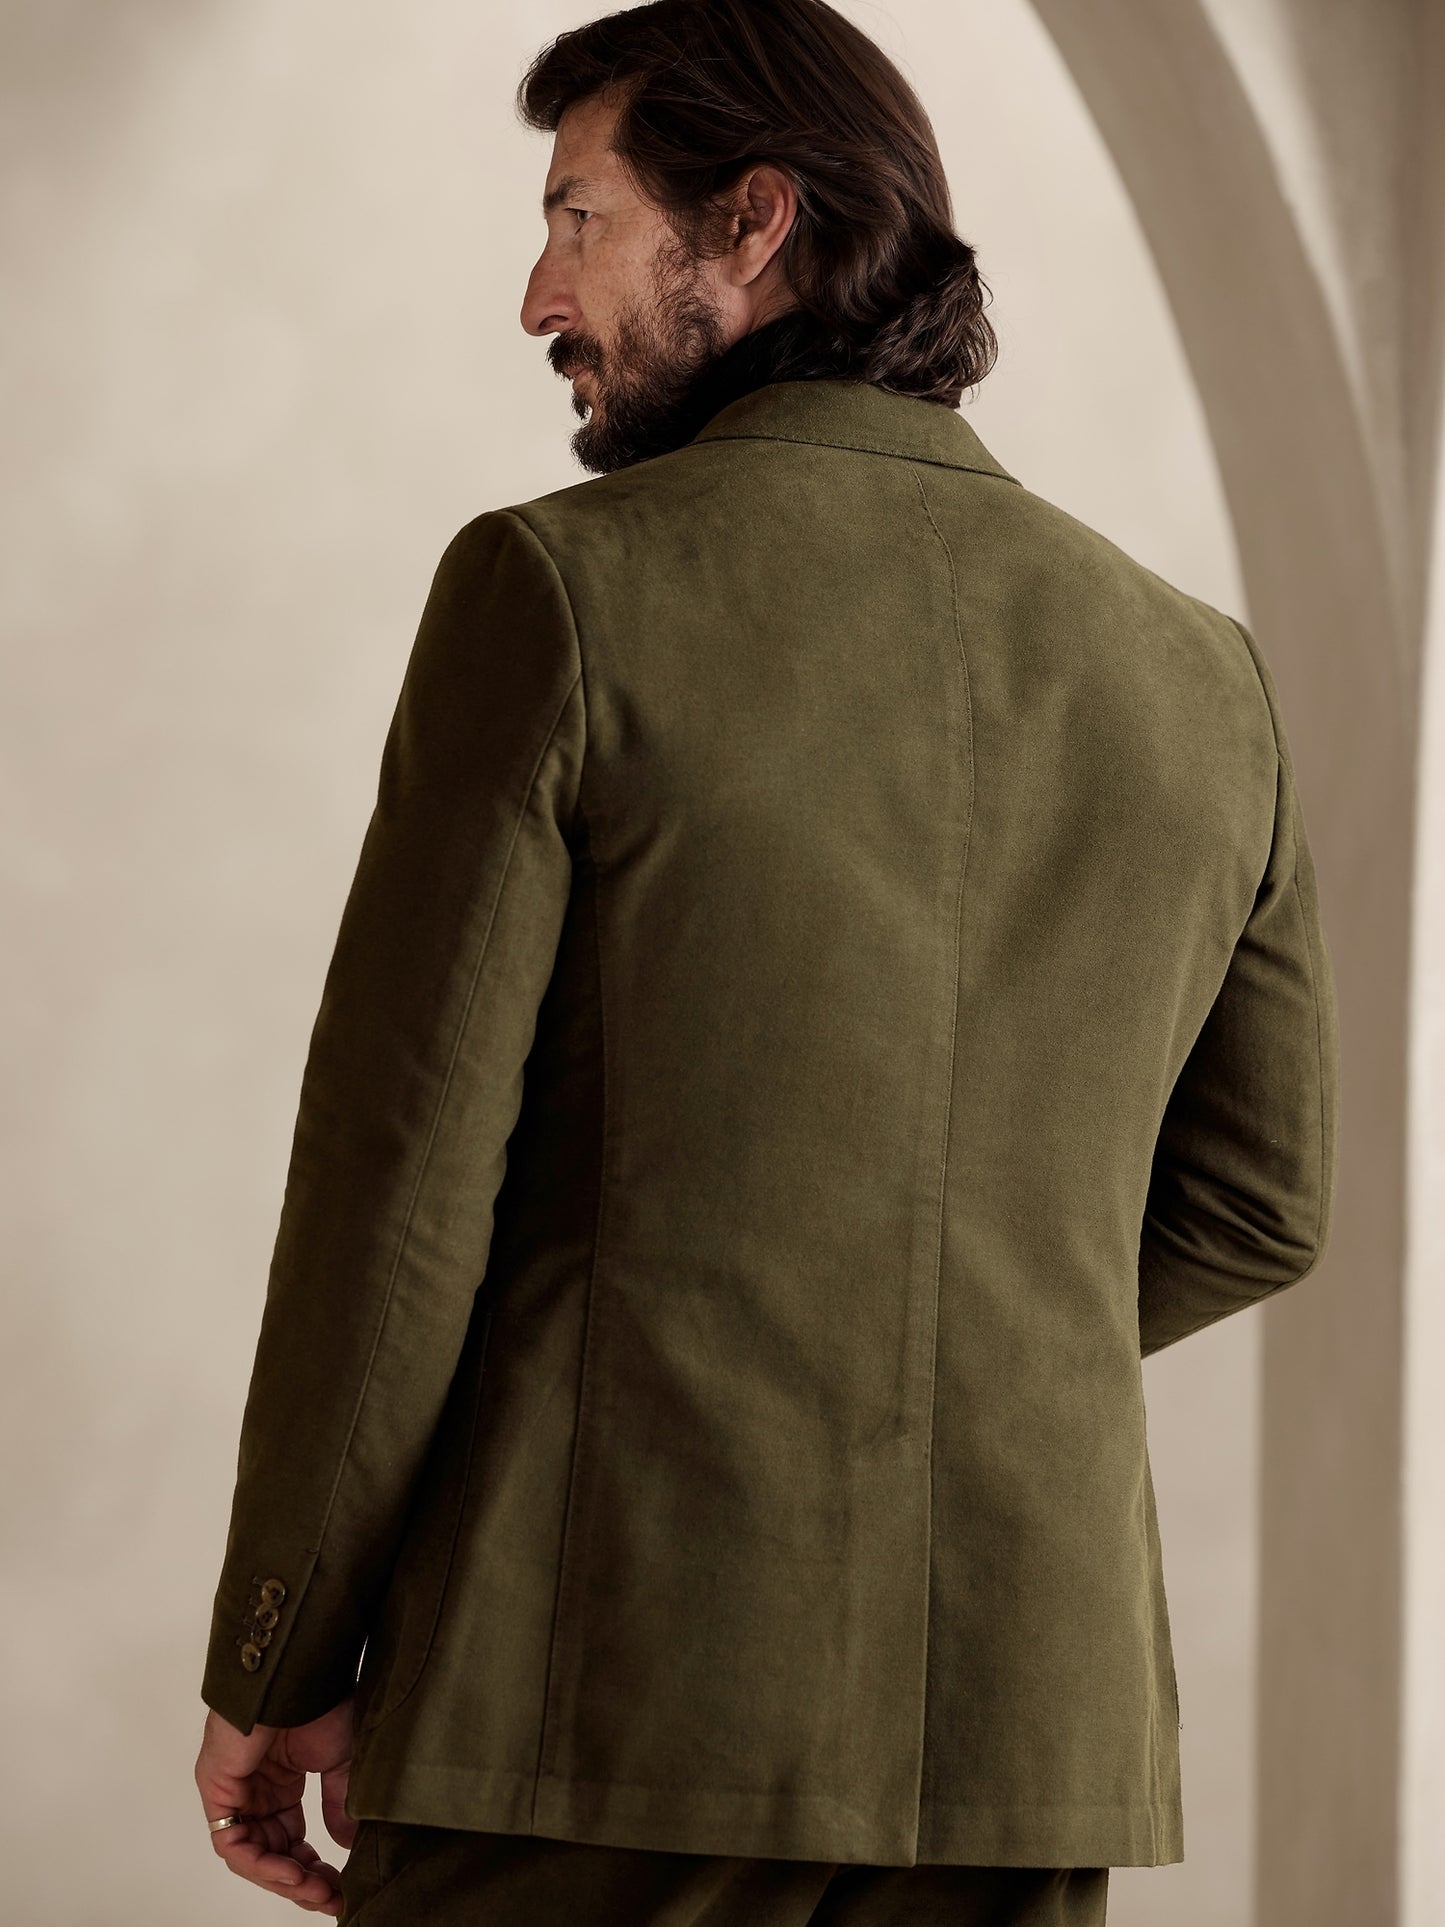 Ramiro Italian Moleskin Suit Jacket